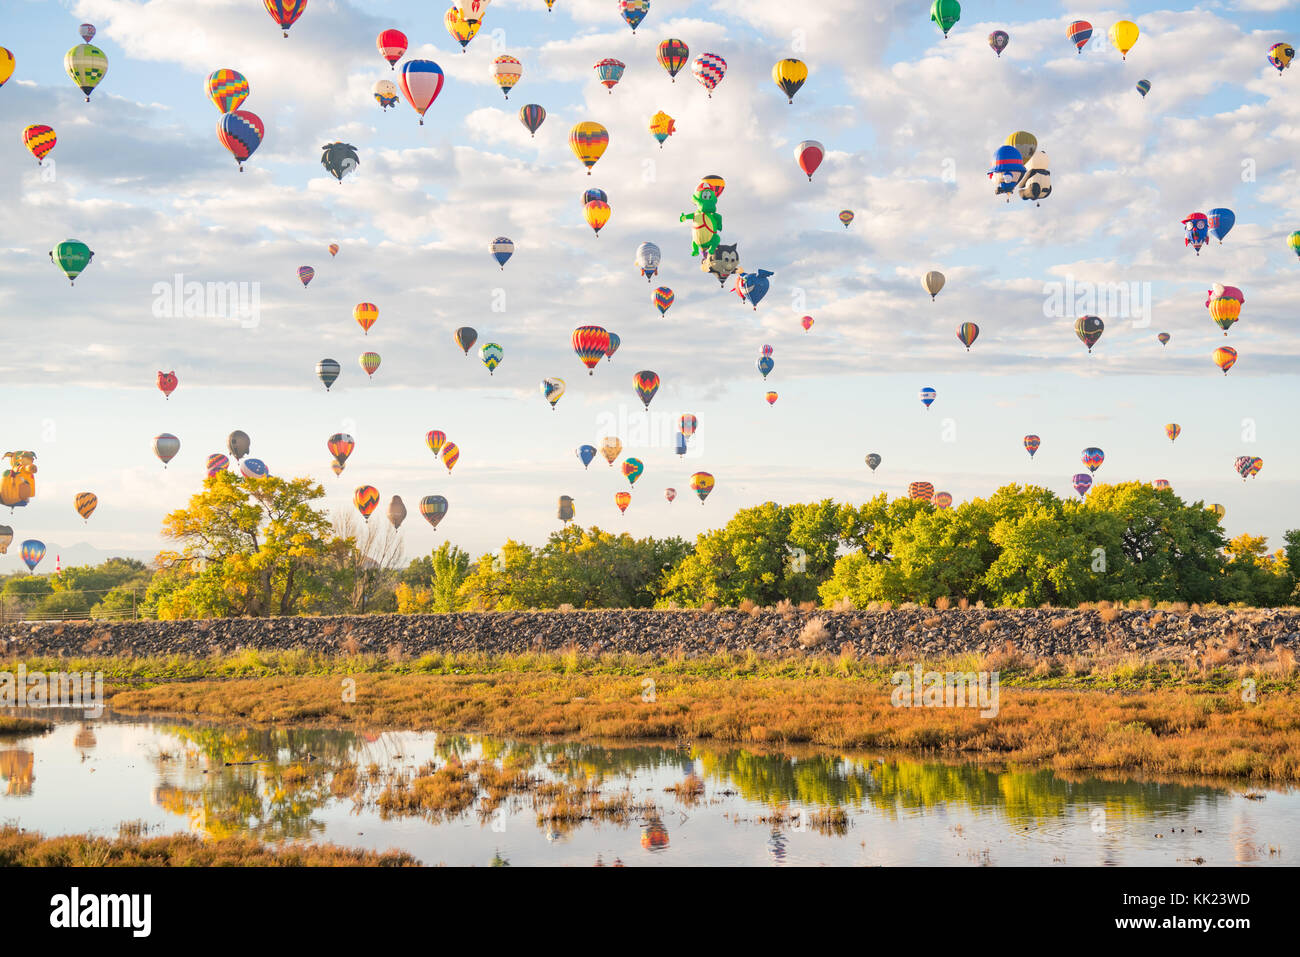 Albuquerque, NM - 13 octobre : ballons volent sur albuquerque Albuquerque Balloon Festival durant le 13 octobre 2017 Banque D'Images